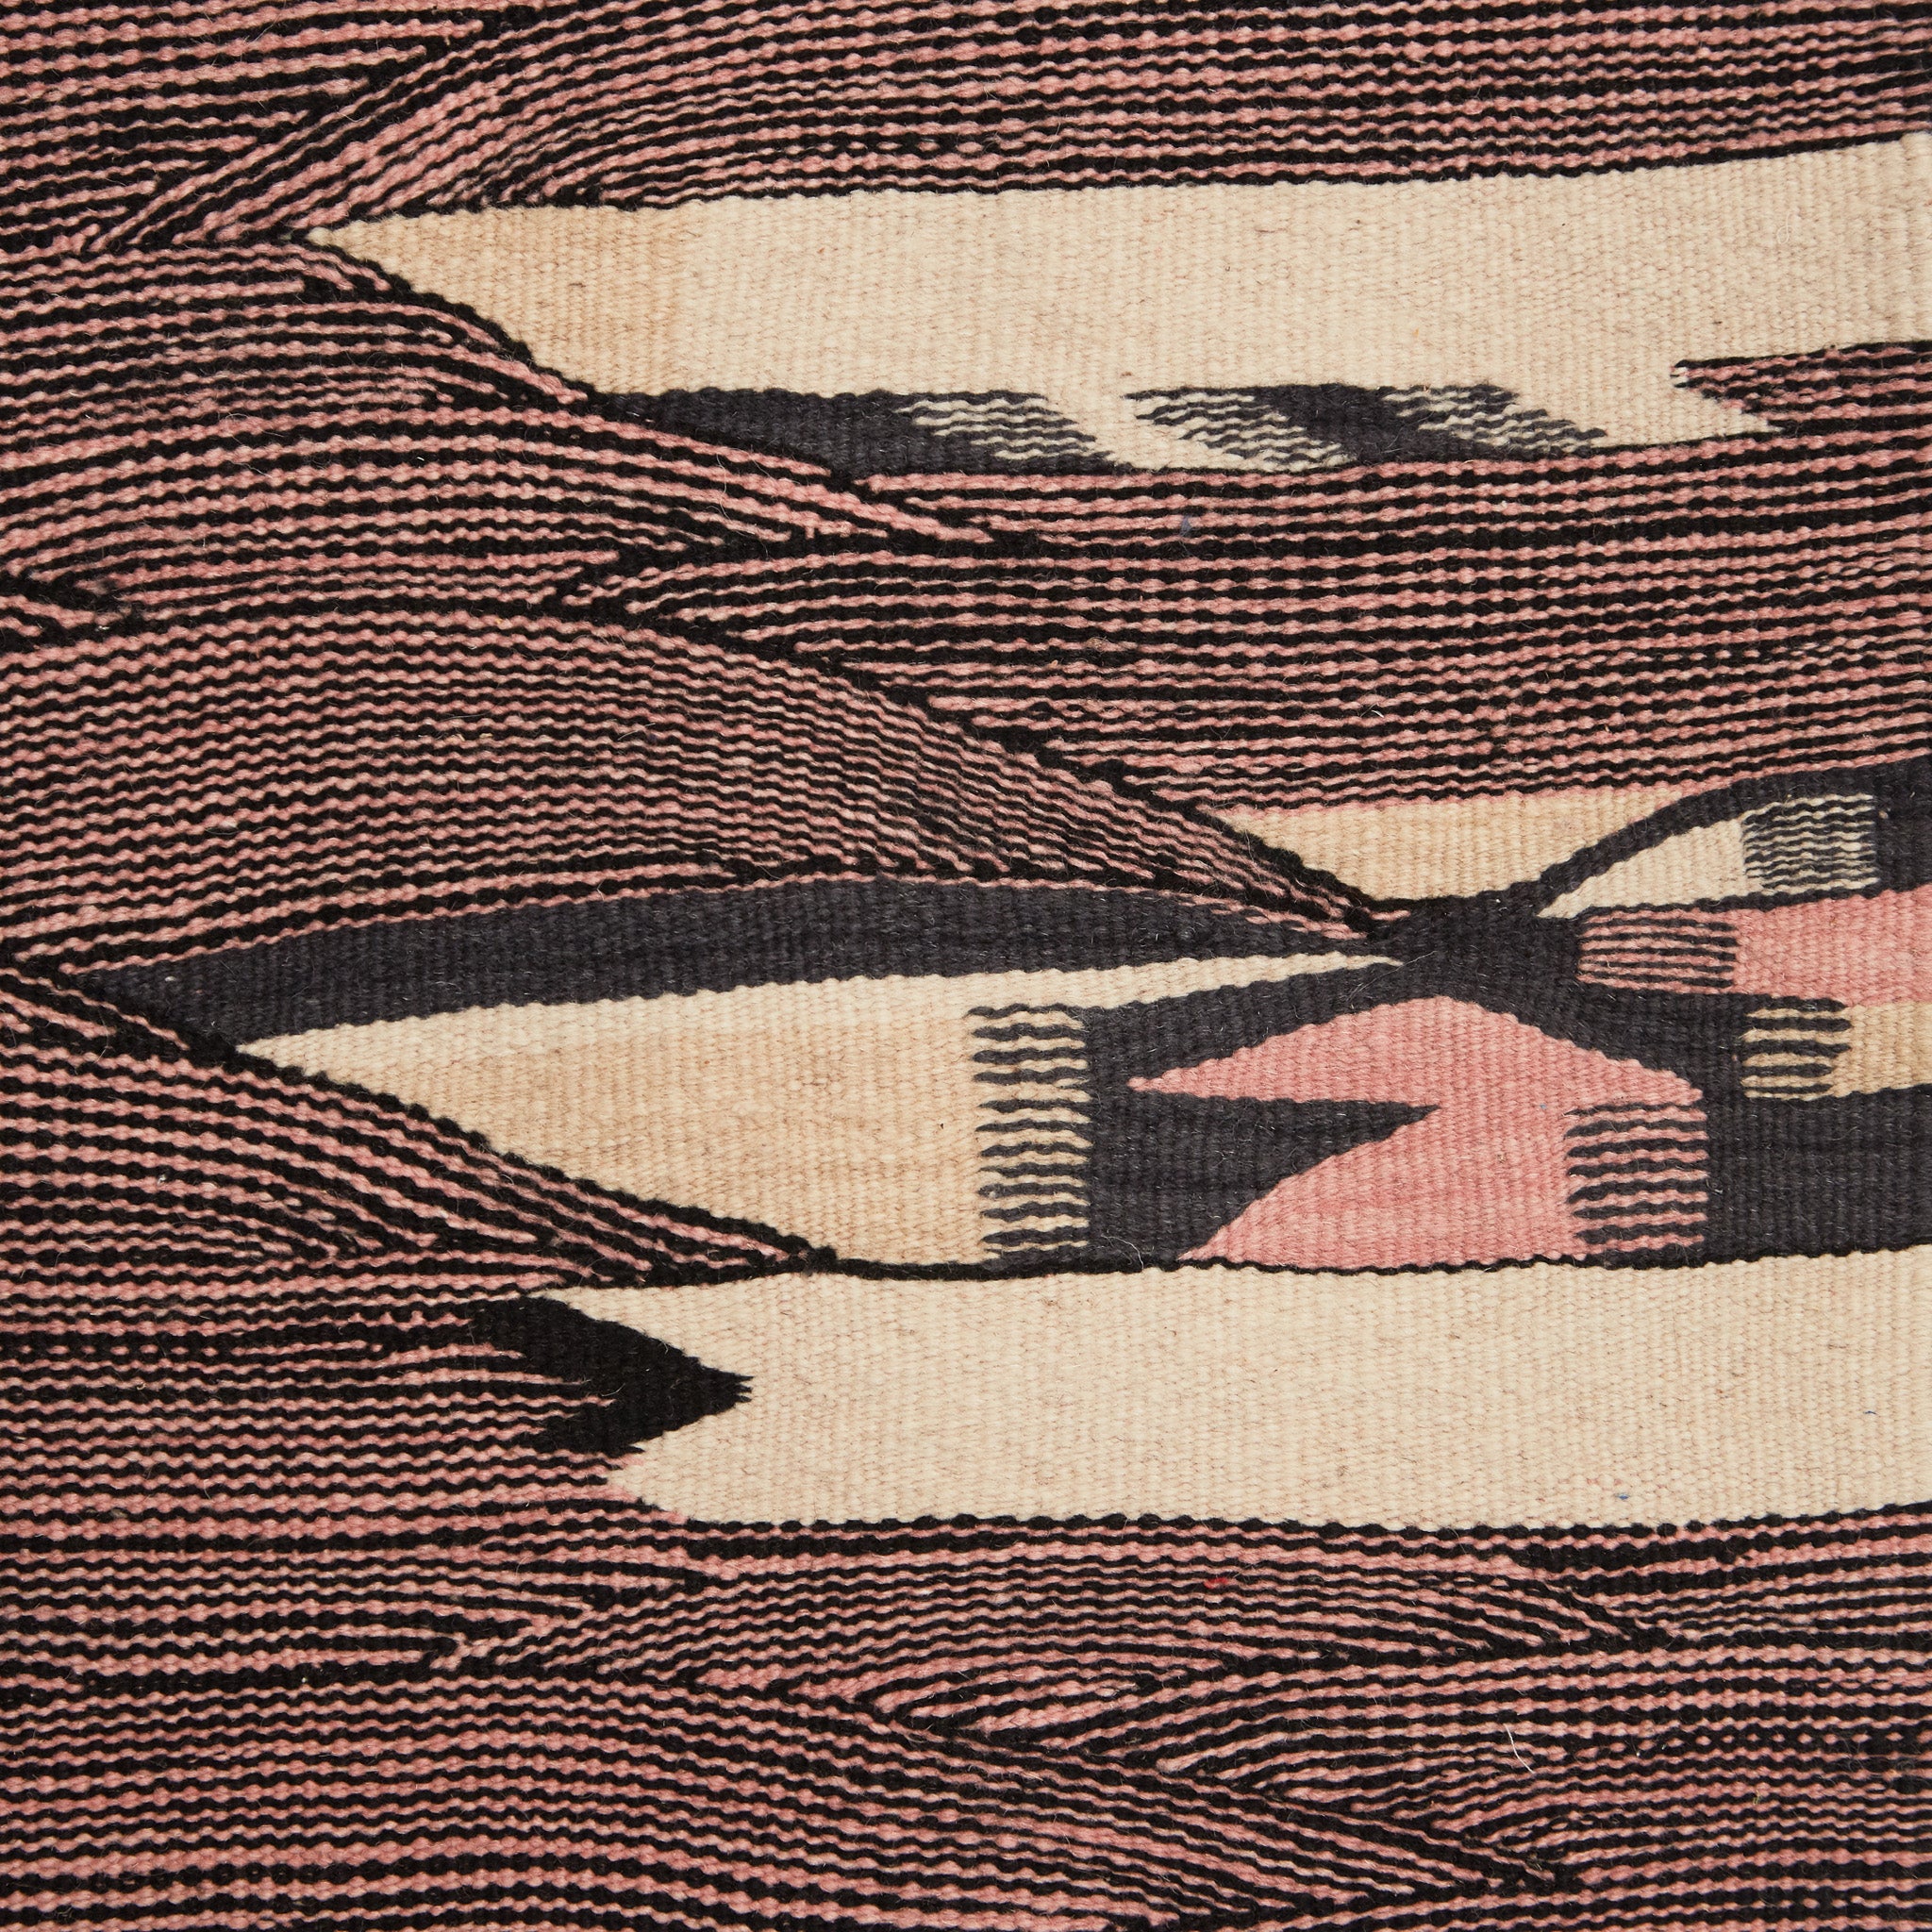 dettaglio della fantiasia e della lavorazione di un tappeto kharita a tessitura piatta realizzando intrecciando lana nera e rosa 